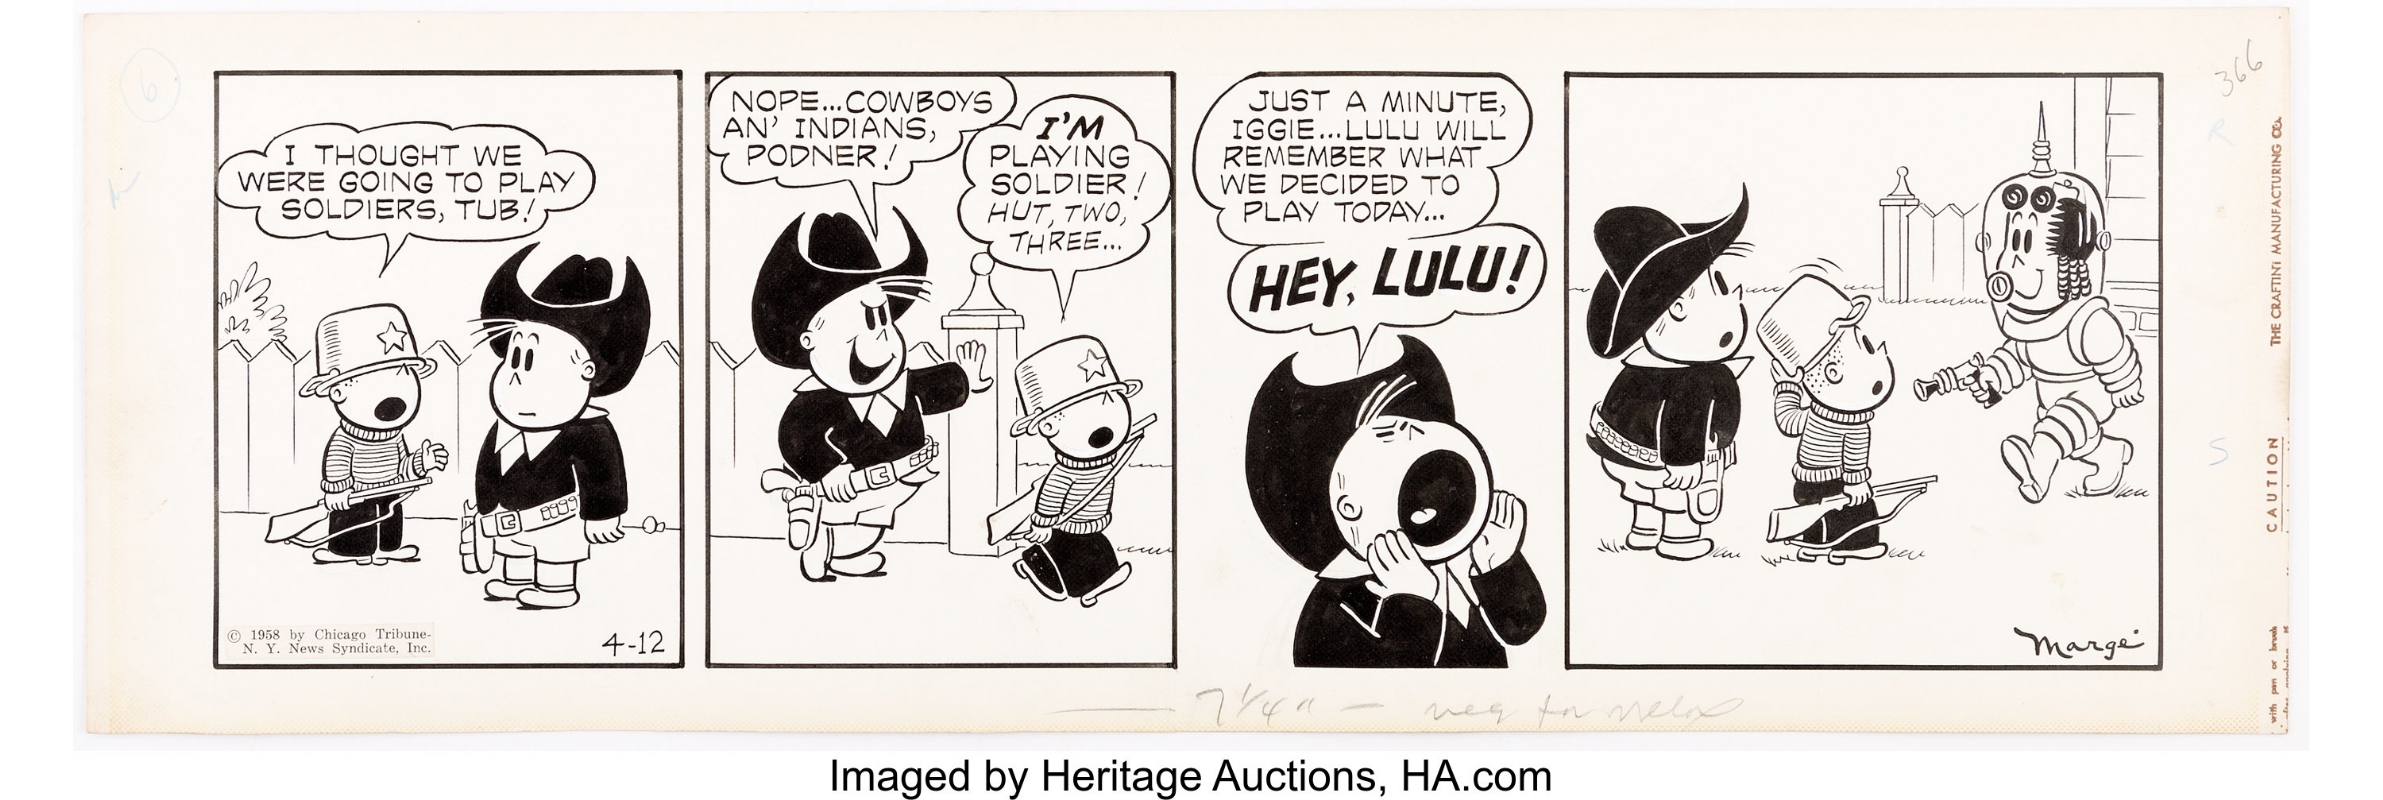 Little Lulu comic strip 04-12-1958, in Tom Field's STOLEN! Comic Art  Gallery Room